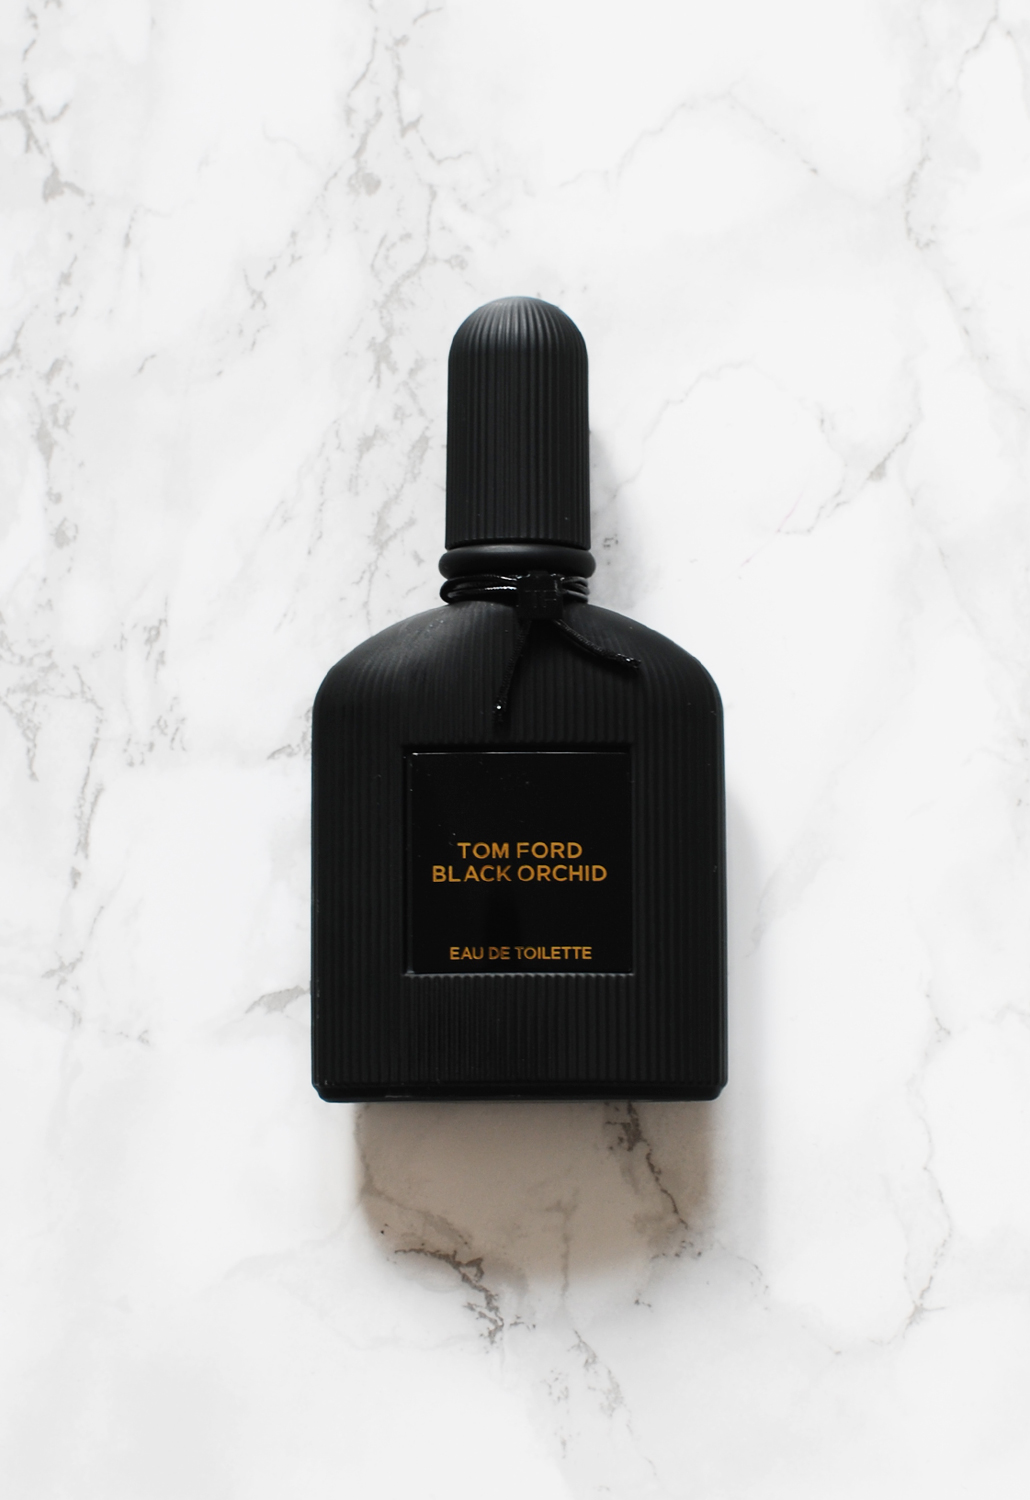 Tom Ford Black Orchid eau de toilette review lifestyle by linda